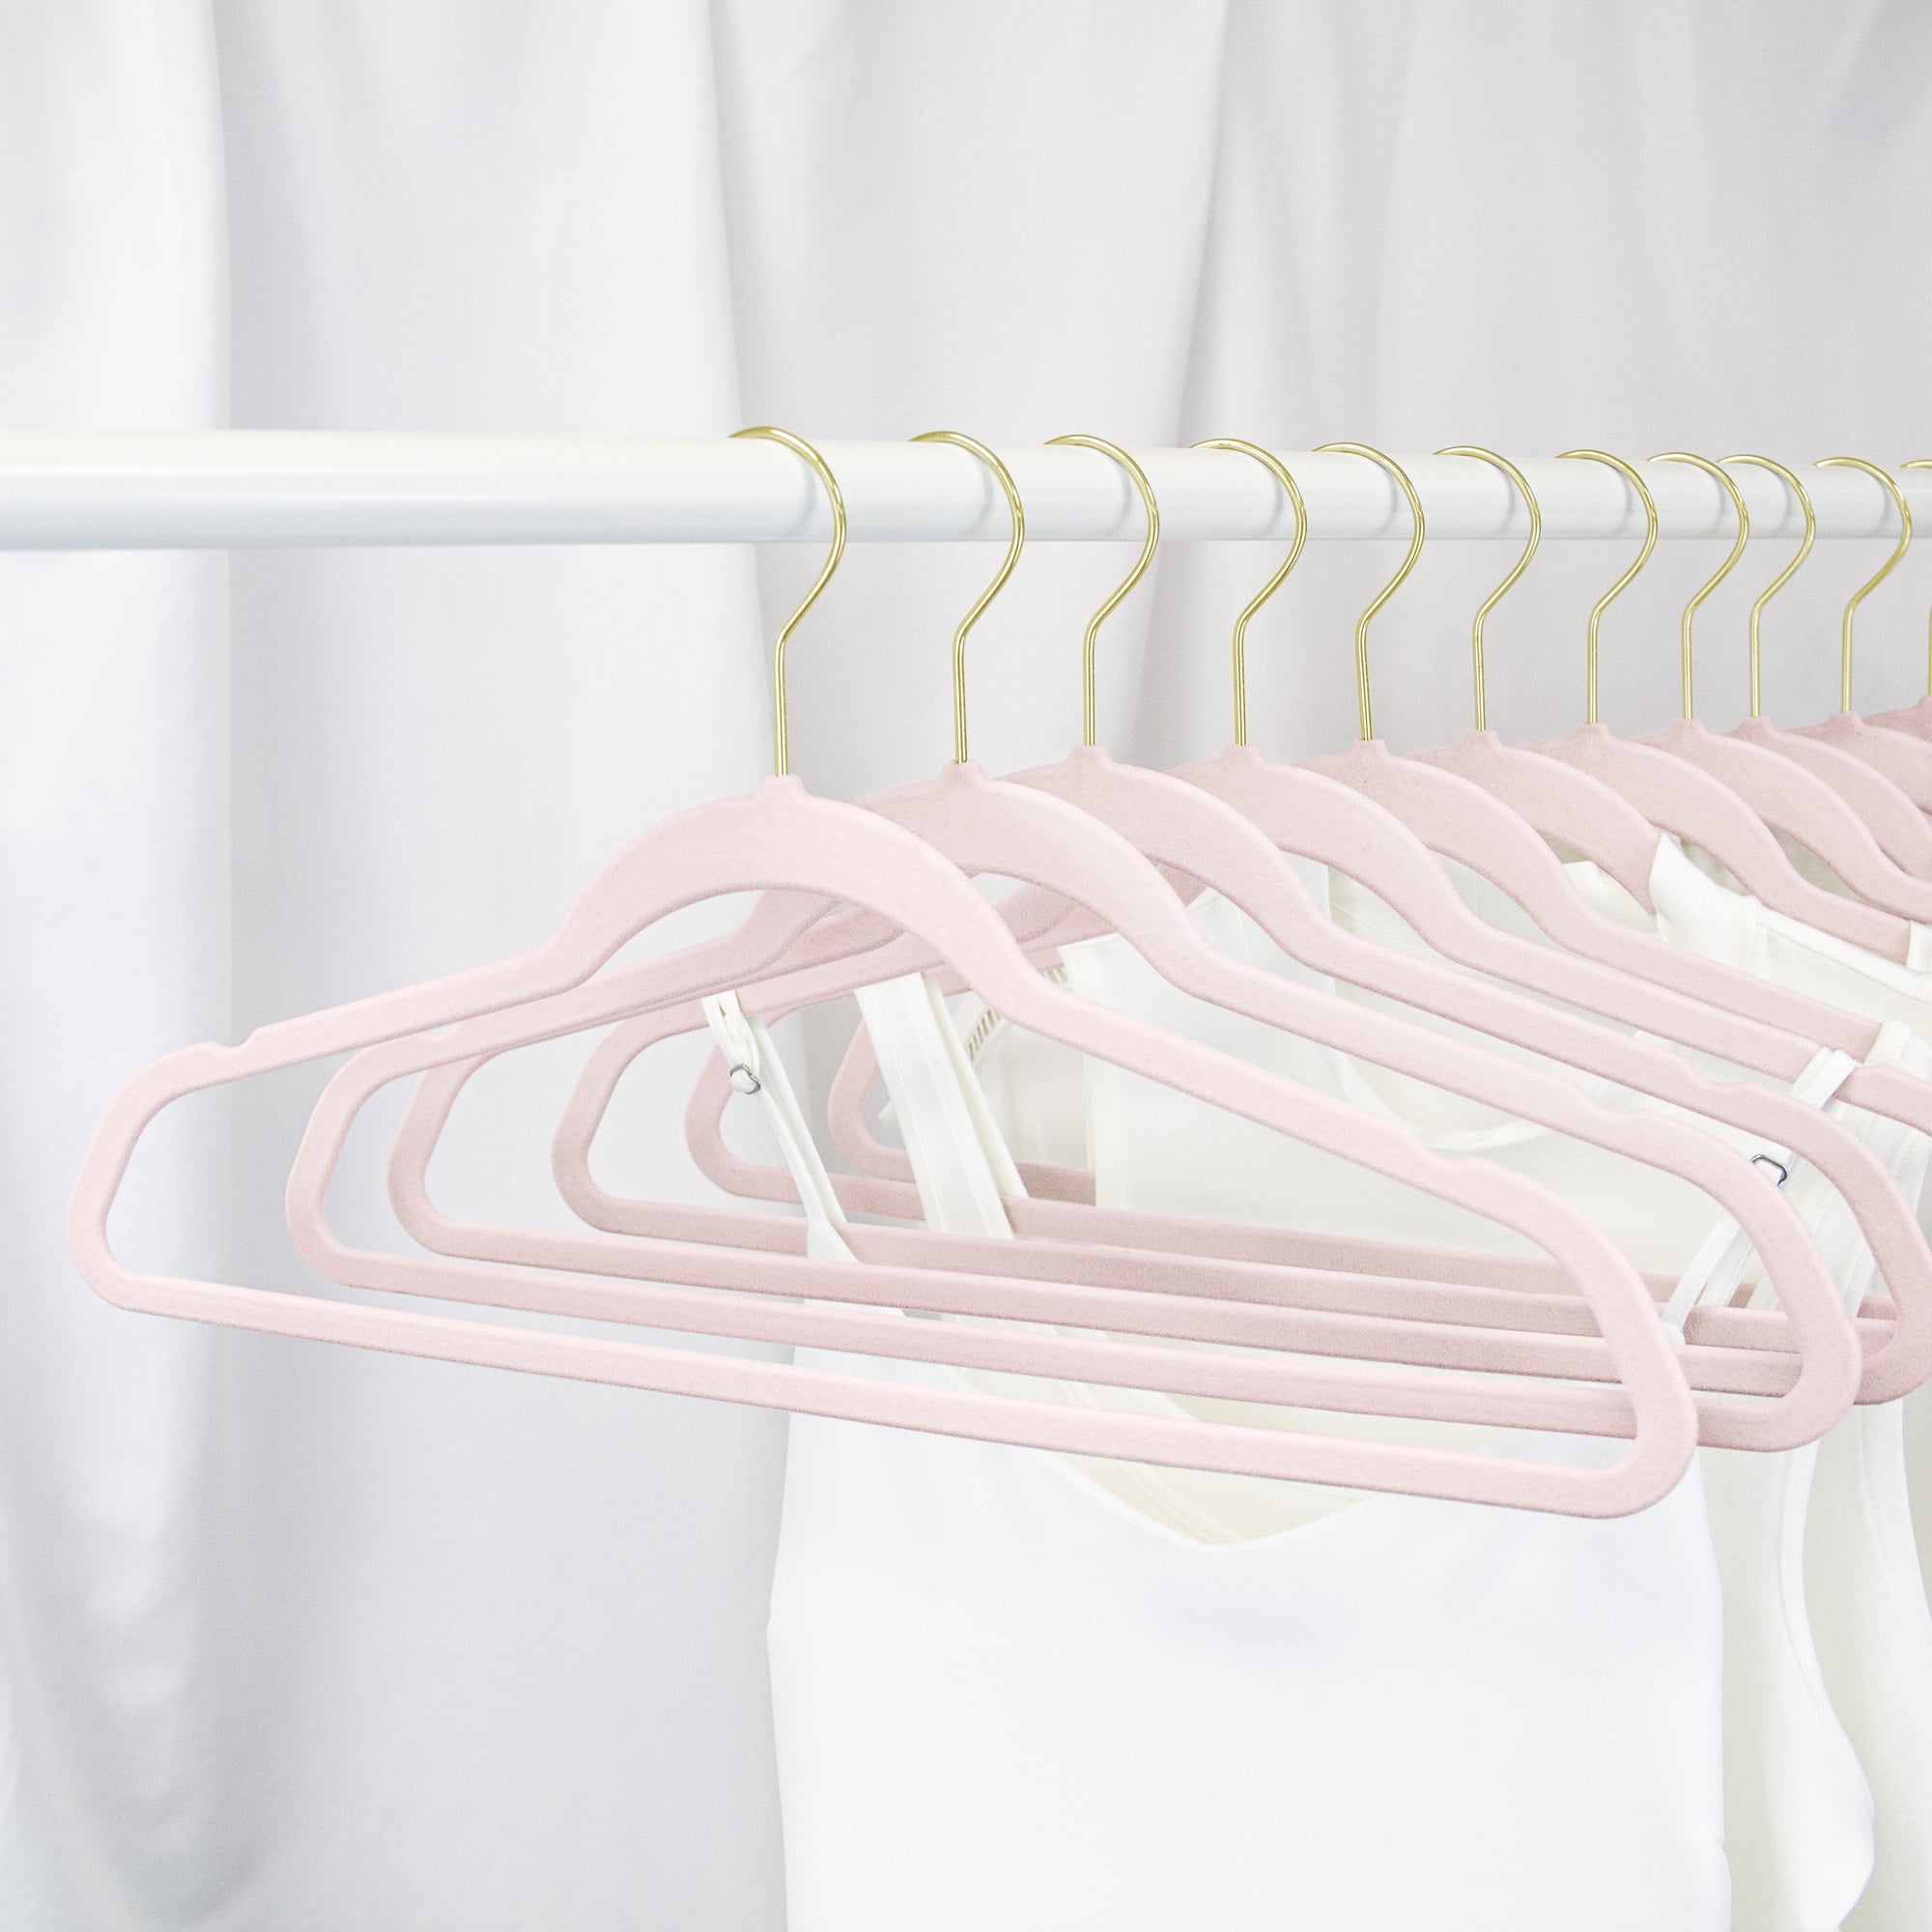 OSTO Pink Velvet Hangers 50-Pack OV-126-50-PK-H - The Home Depot